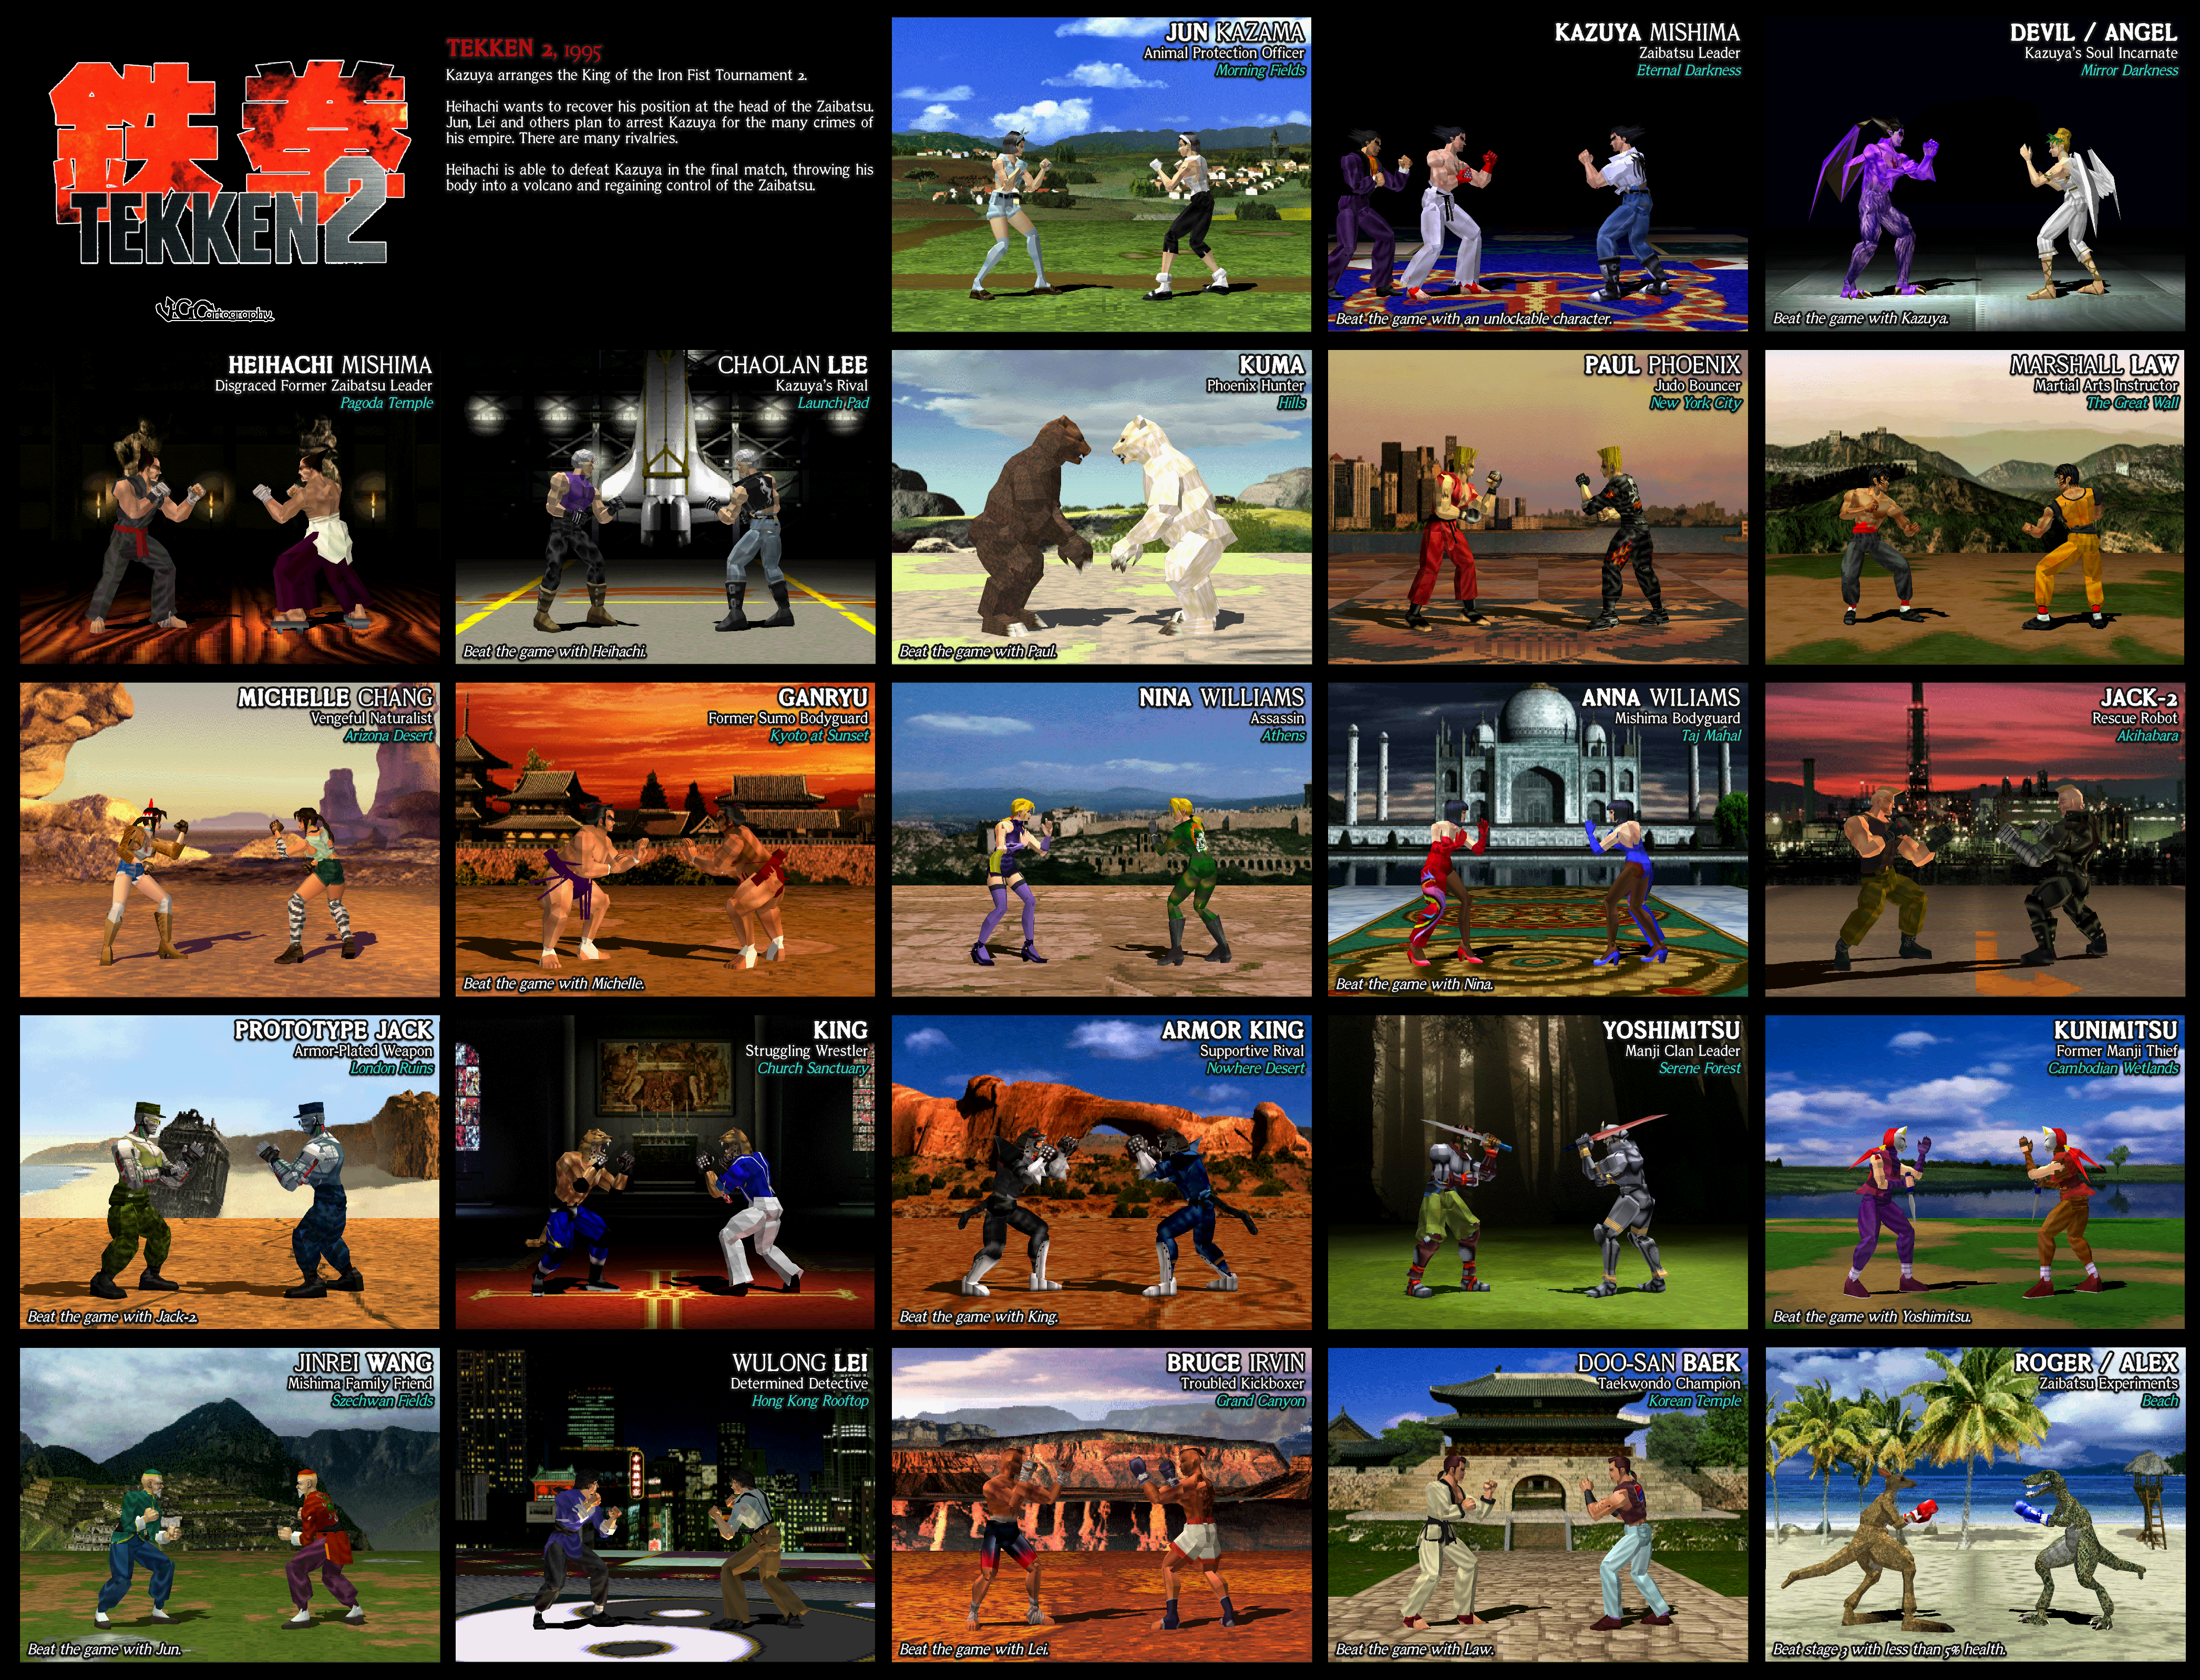 Tekken X Street Fighter - PS4 box art by Duggs on deviantART